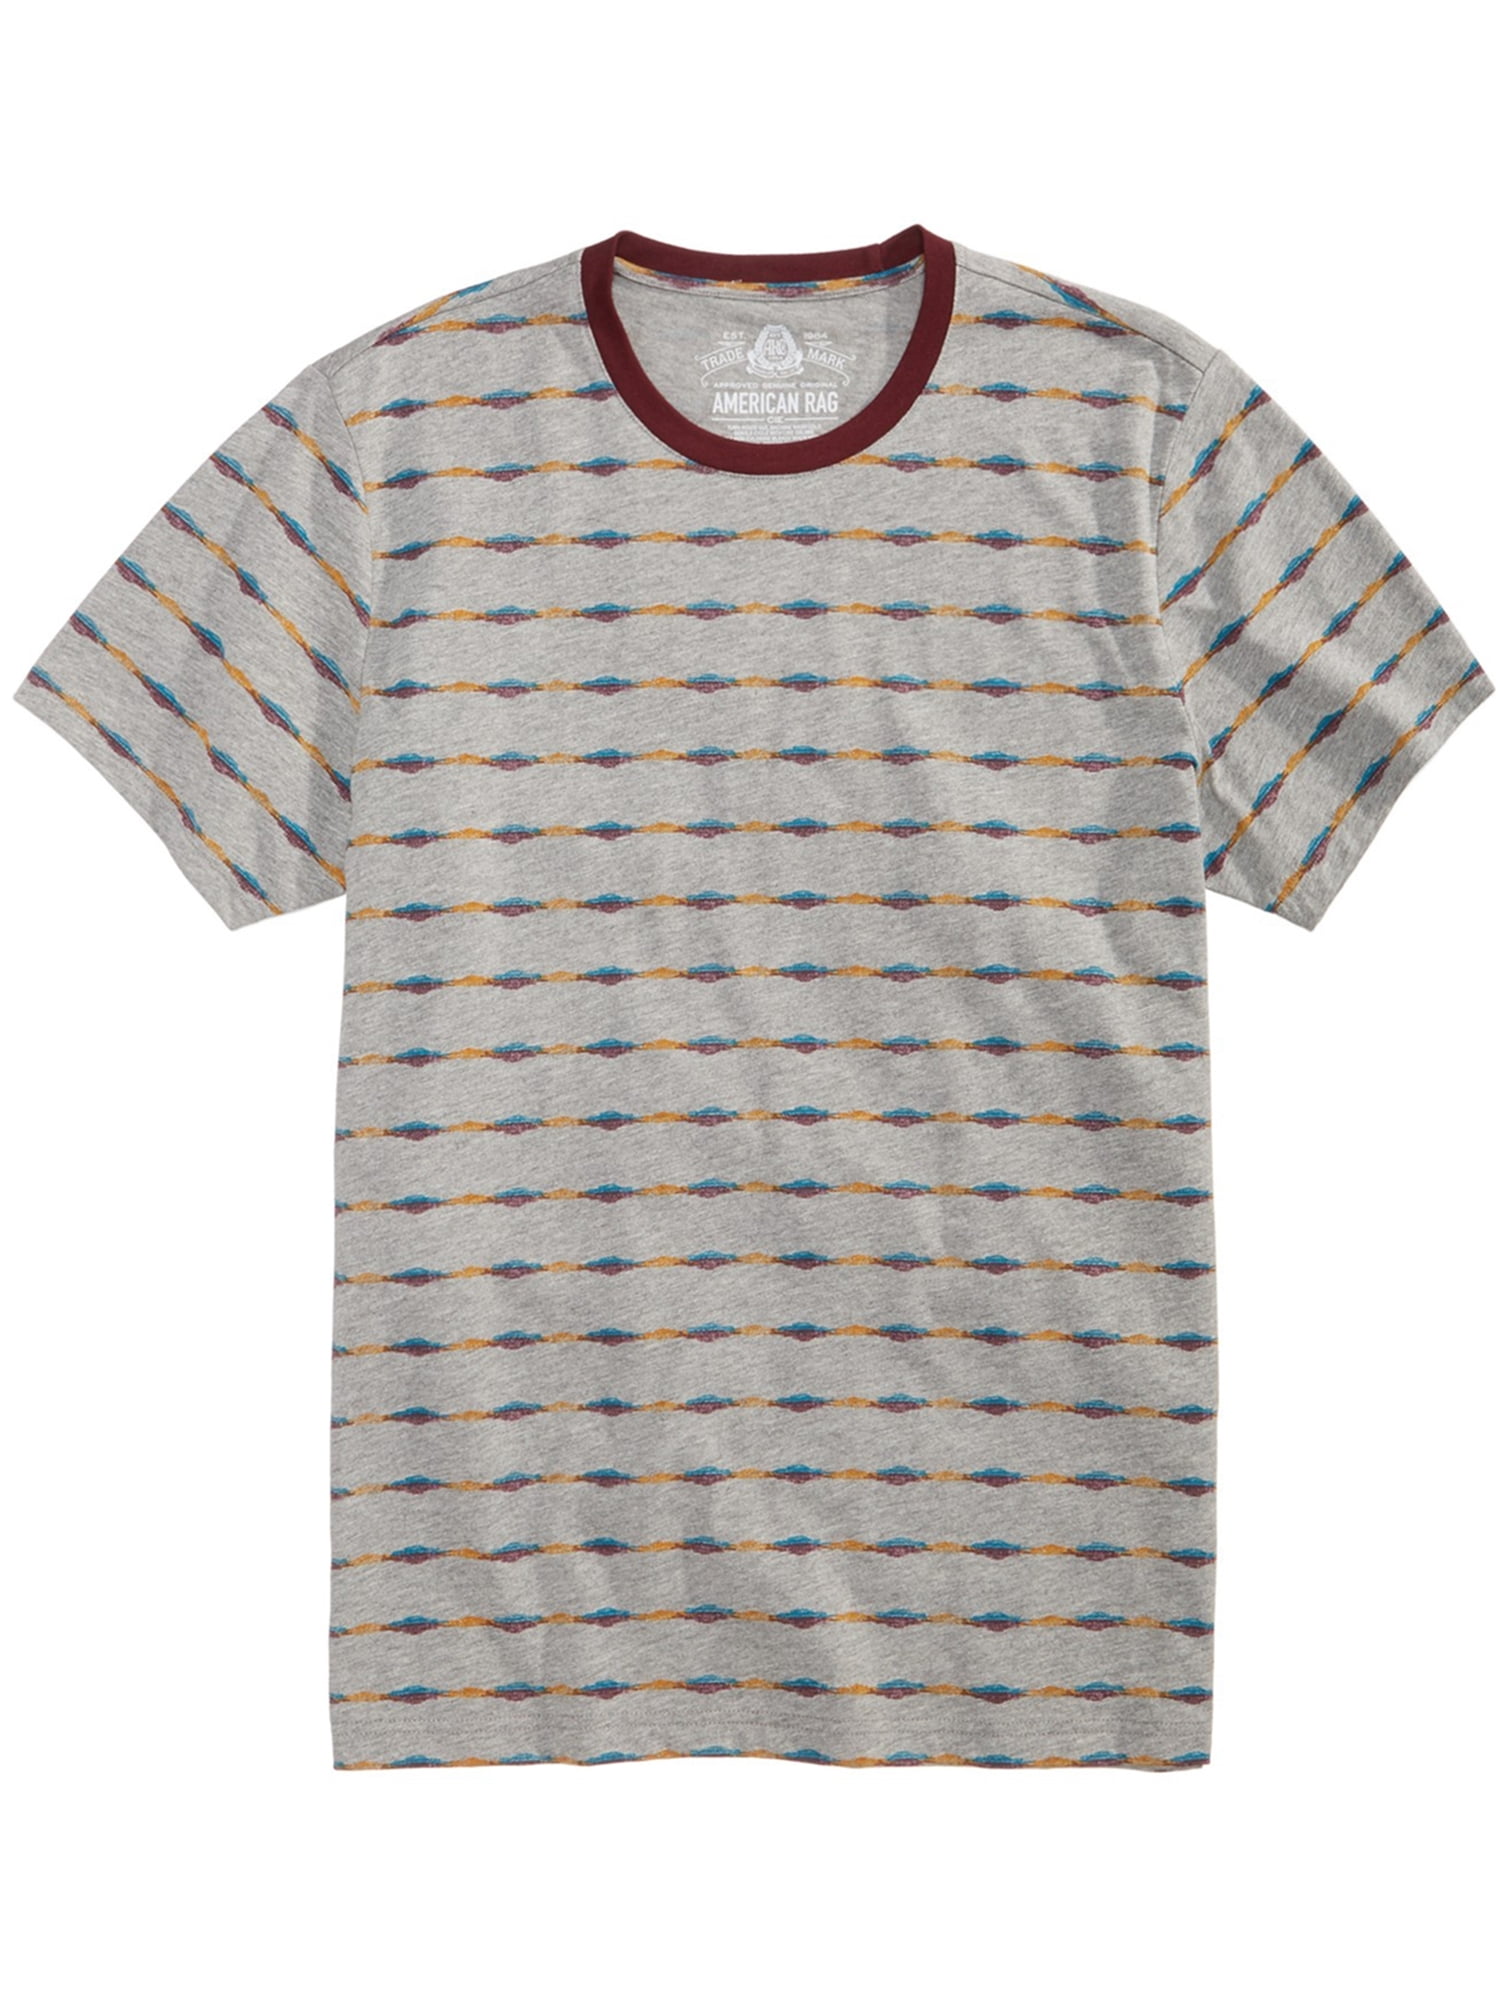 American Rag - American Rag Mens Striped Graphic T-Shirt - Walmart.com